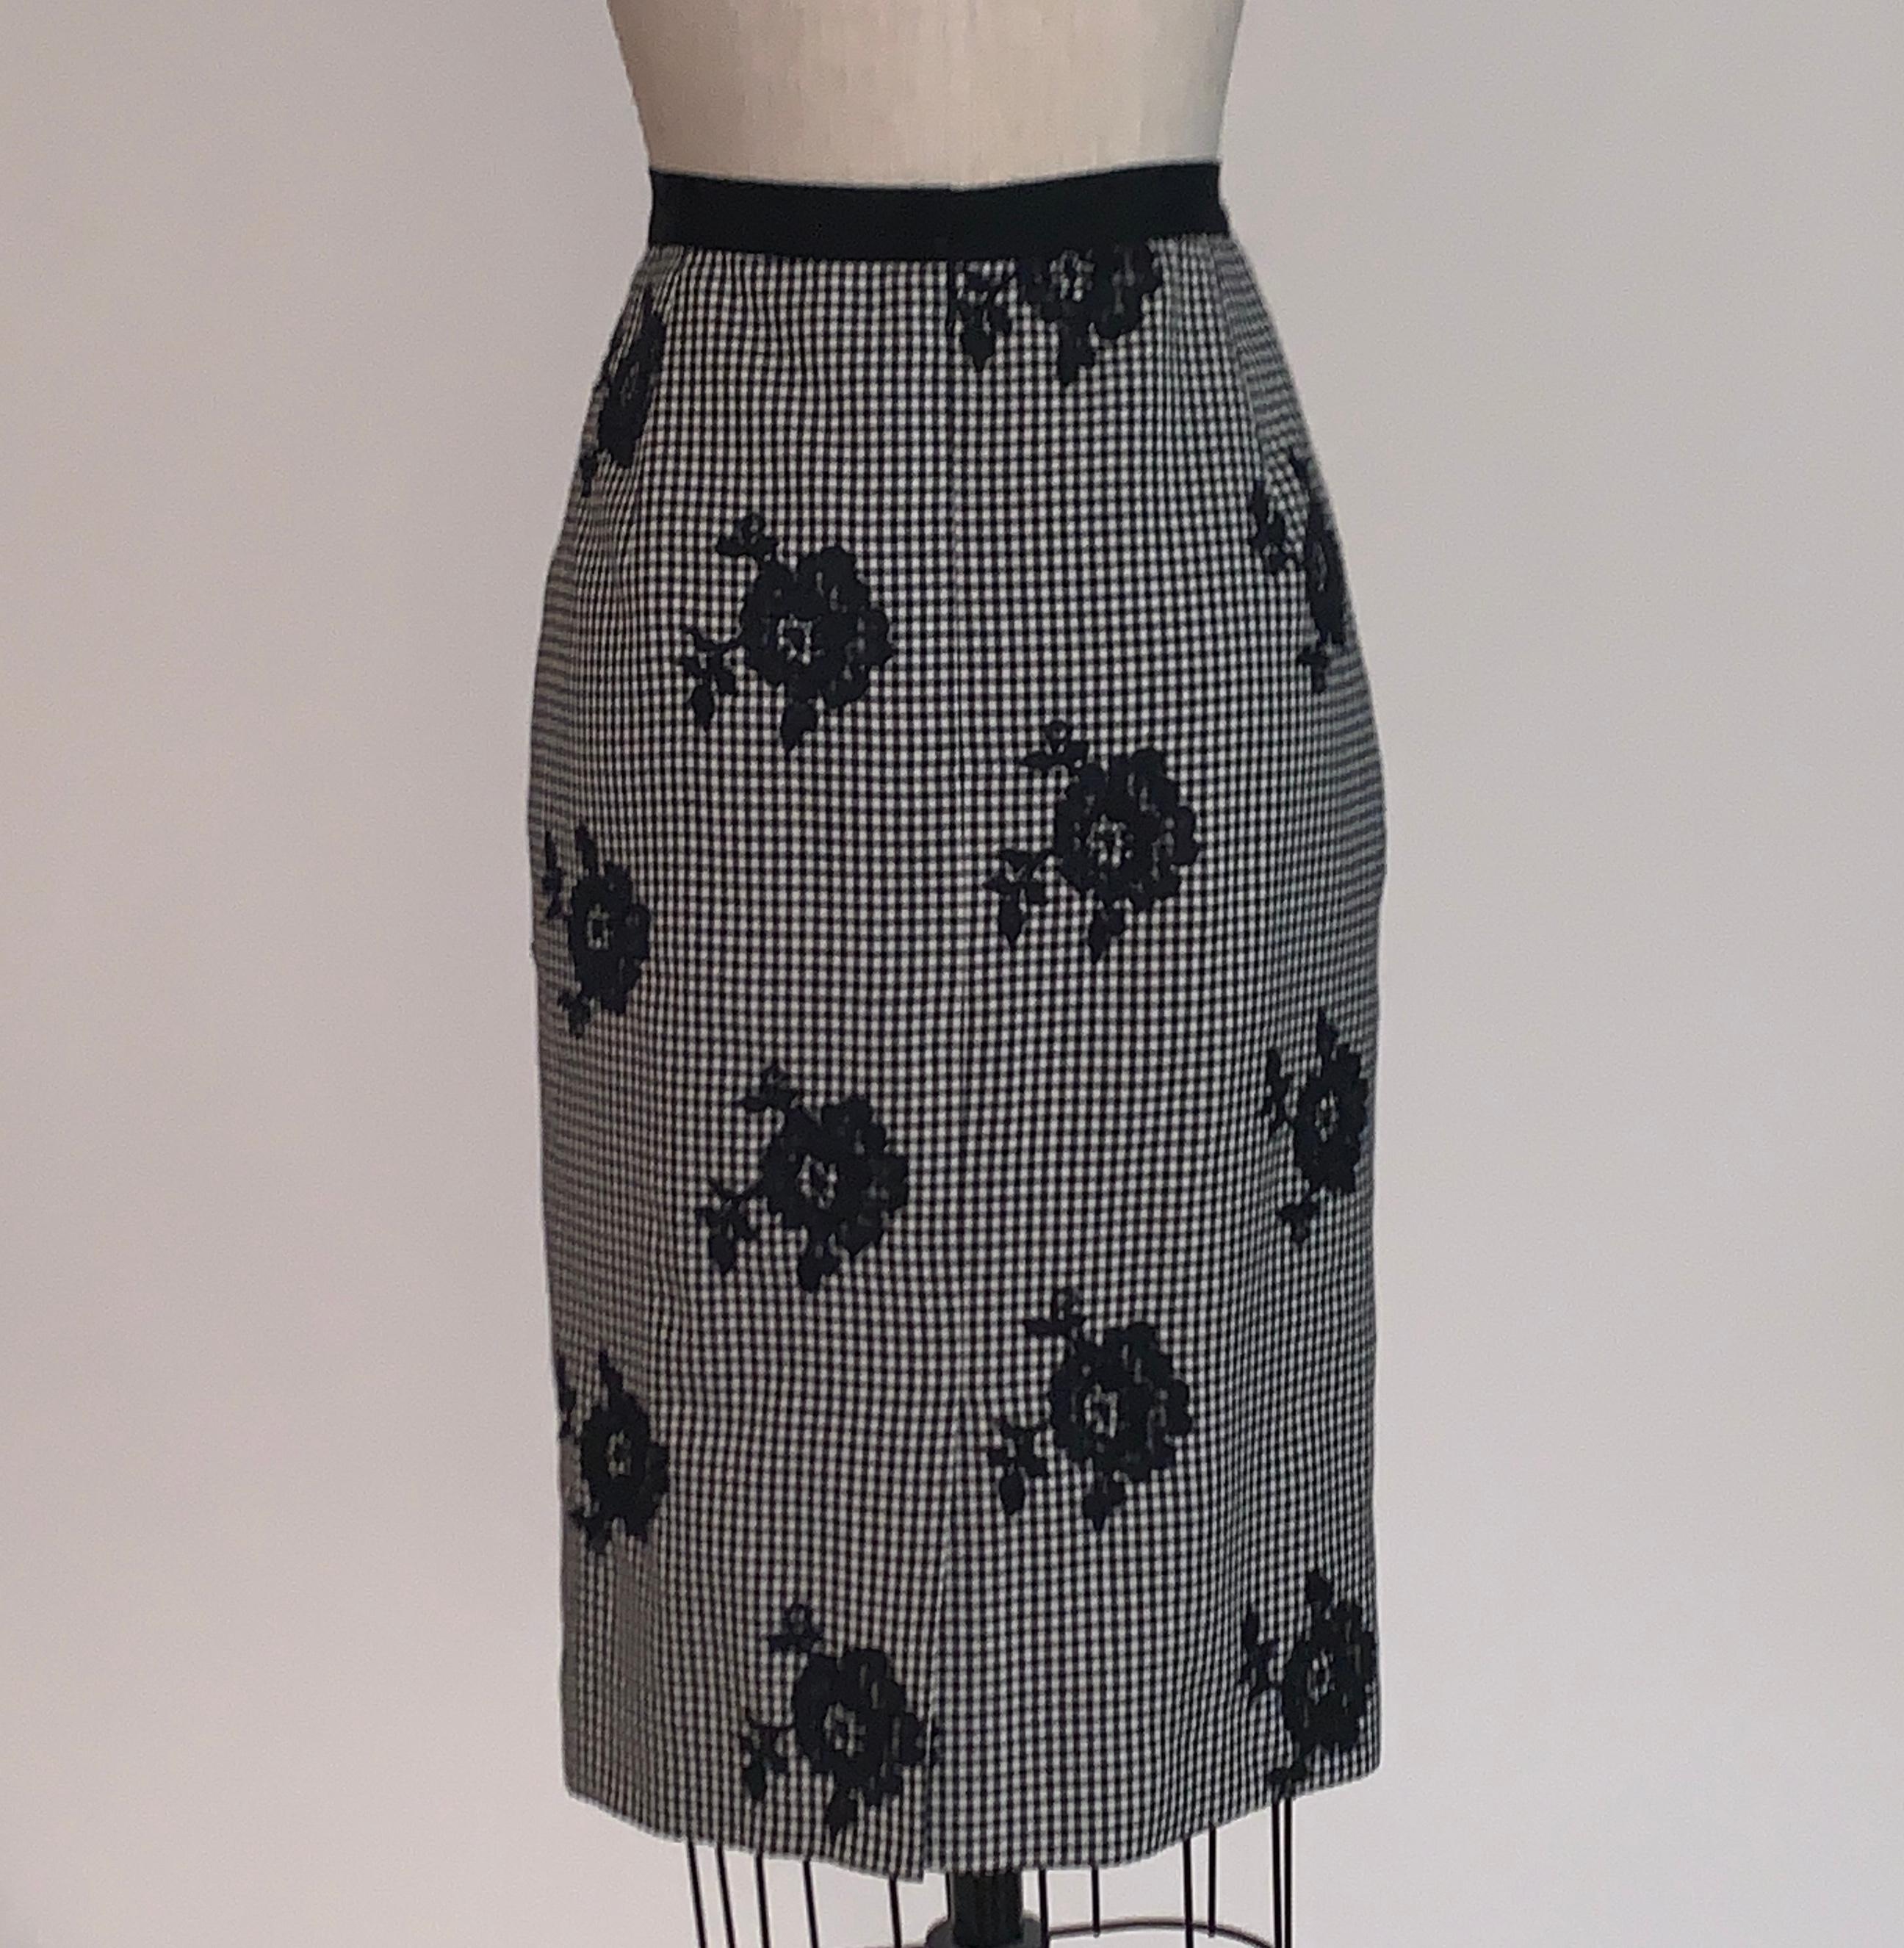 Women's Oscar de la Renta Black and White Check Floral Lace Applique Pencil Skirt